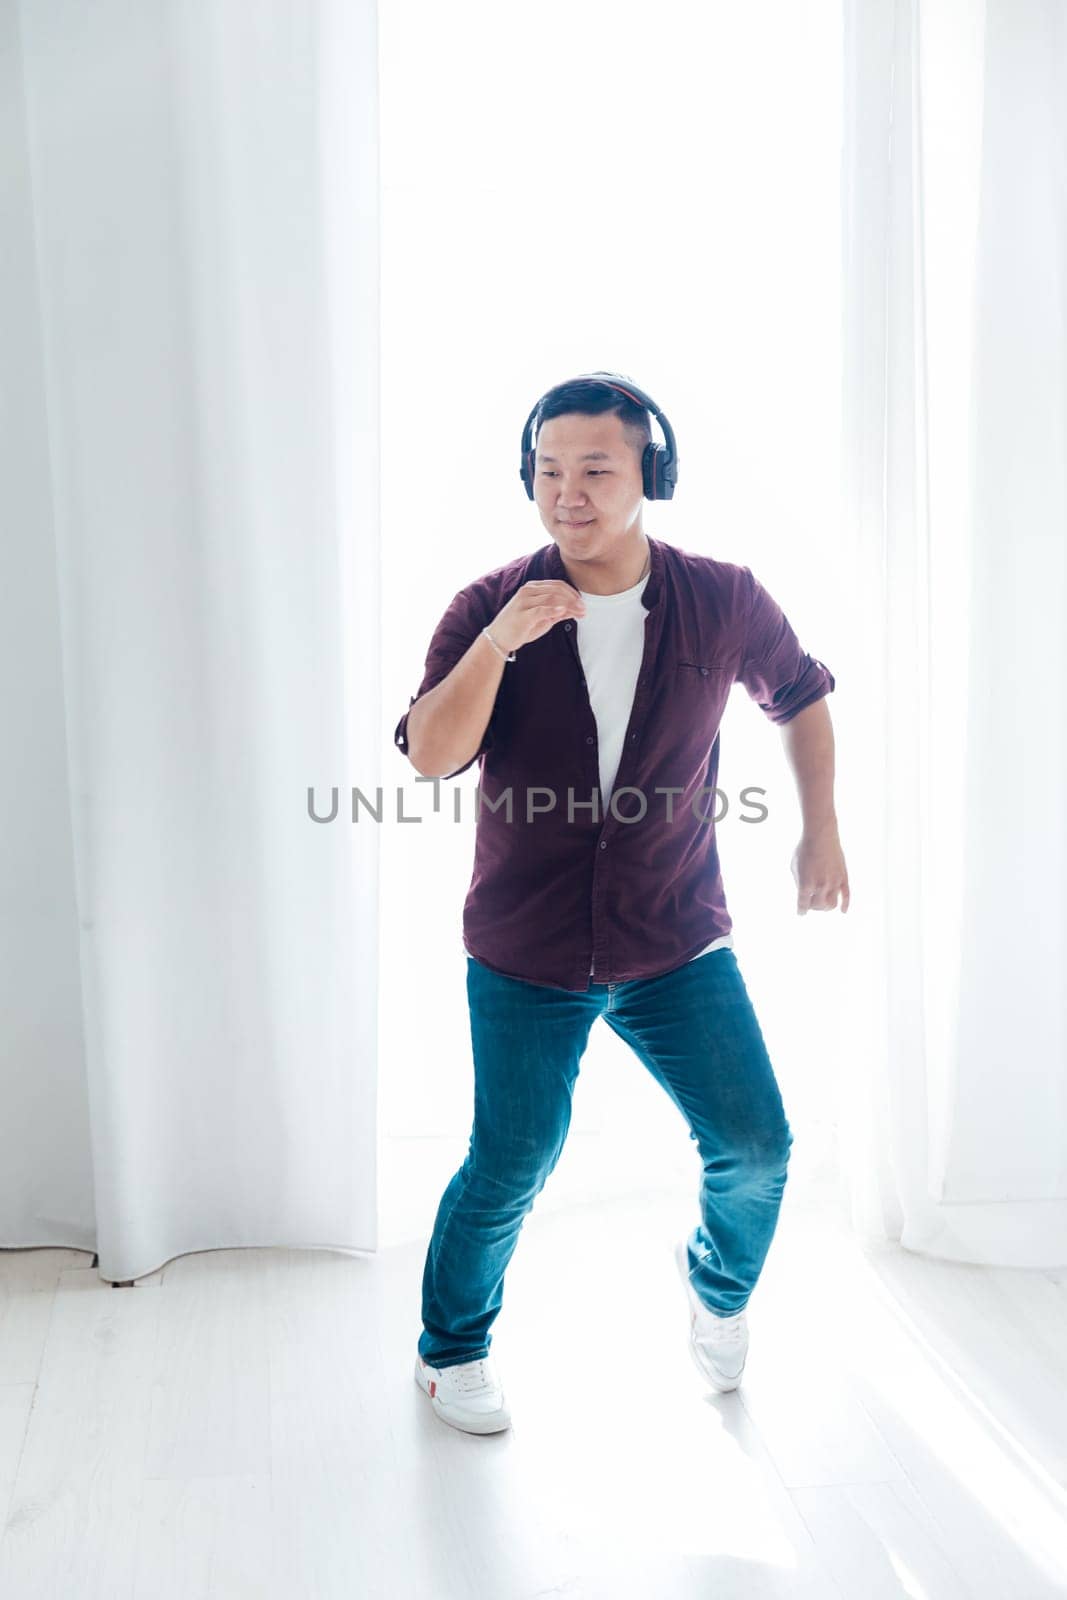 man in headphones dancing to music in the studio hall